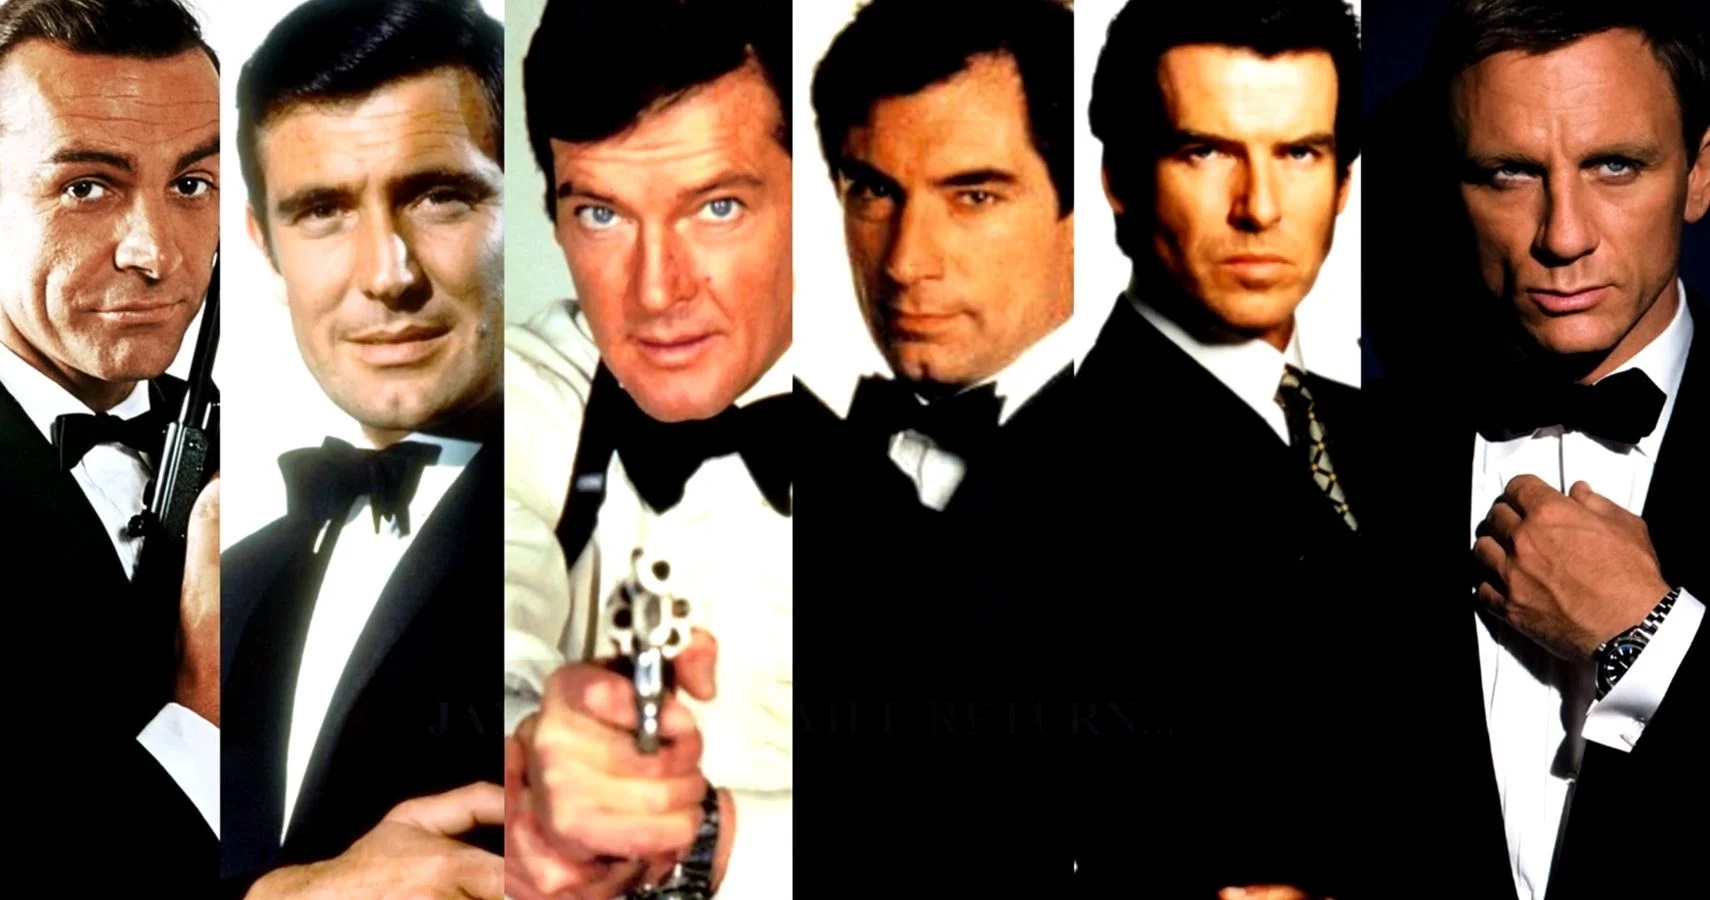 James bond Actors images poster